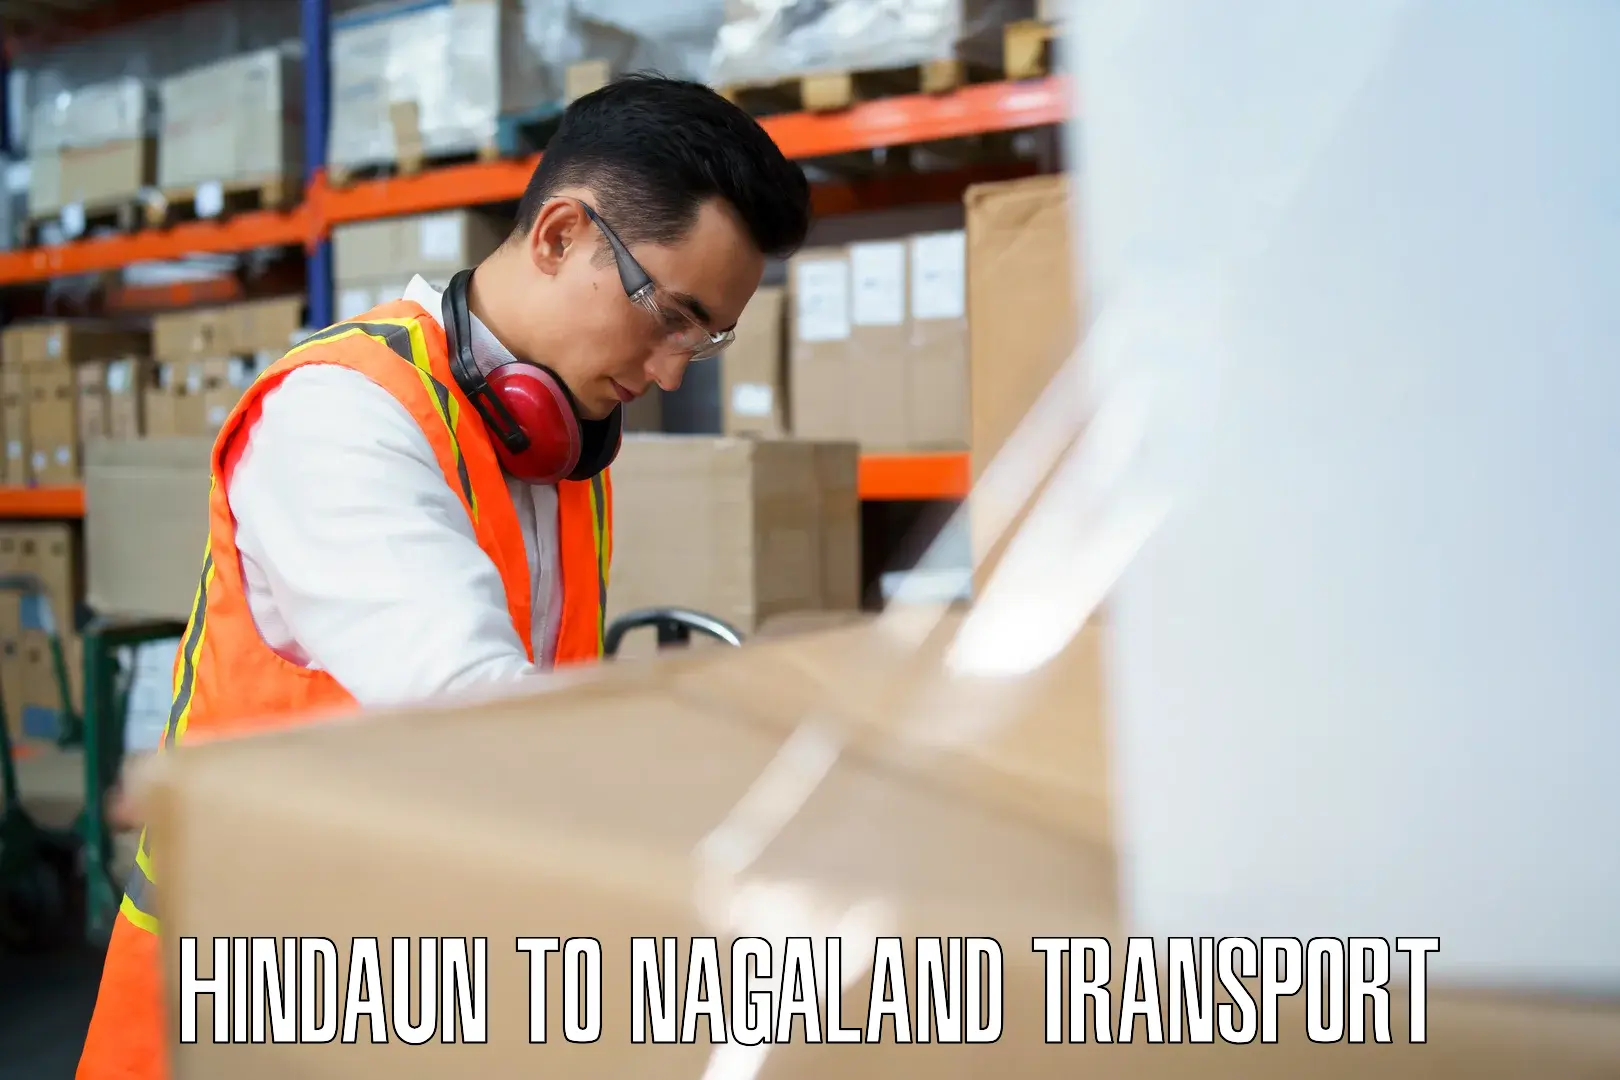 Daily transport service Hindaun to NIT Nagaland